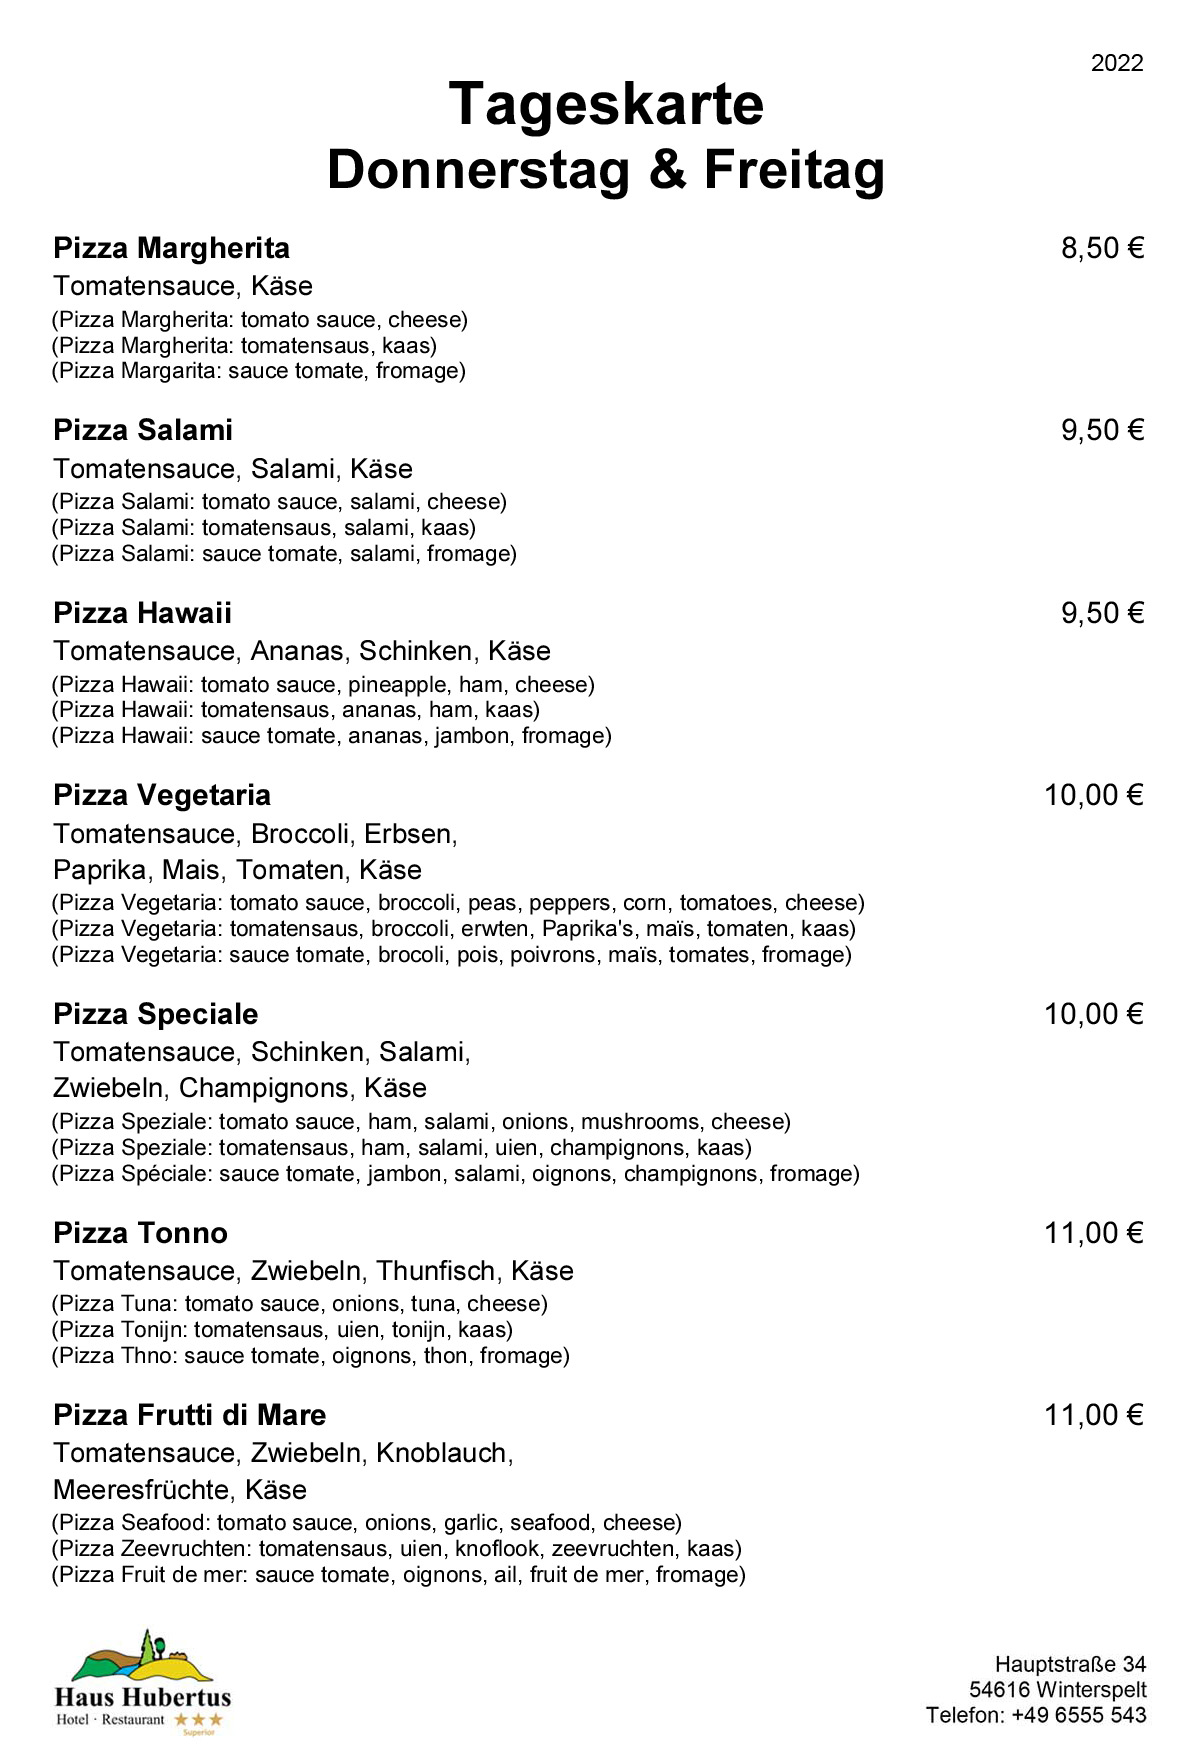 Hotel - Restaurant Haus Hubertus - Speisekarte 07/2022 - Tageskarte / Donnerstag und Freitag